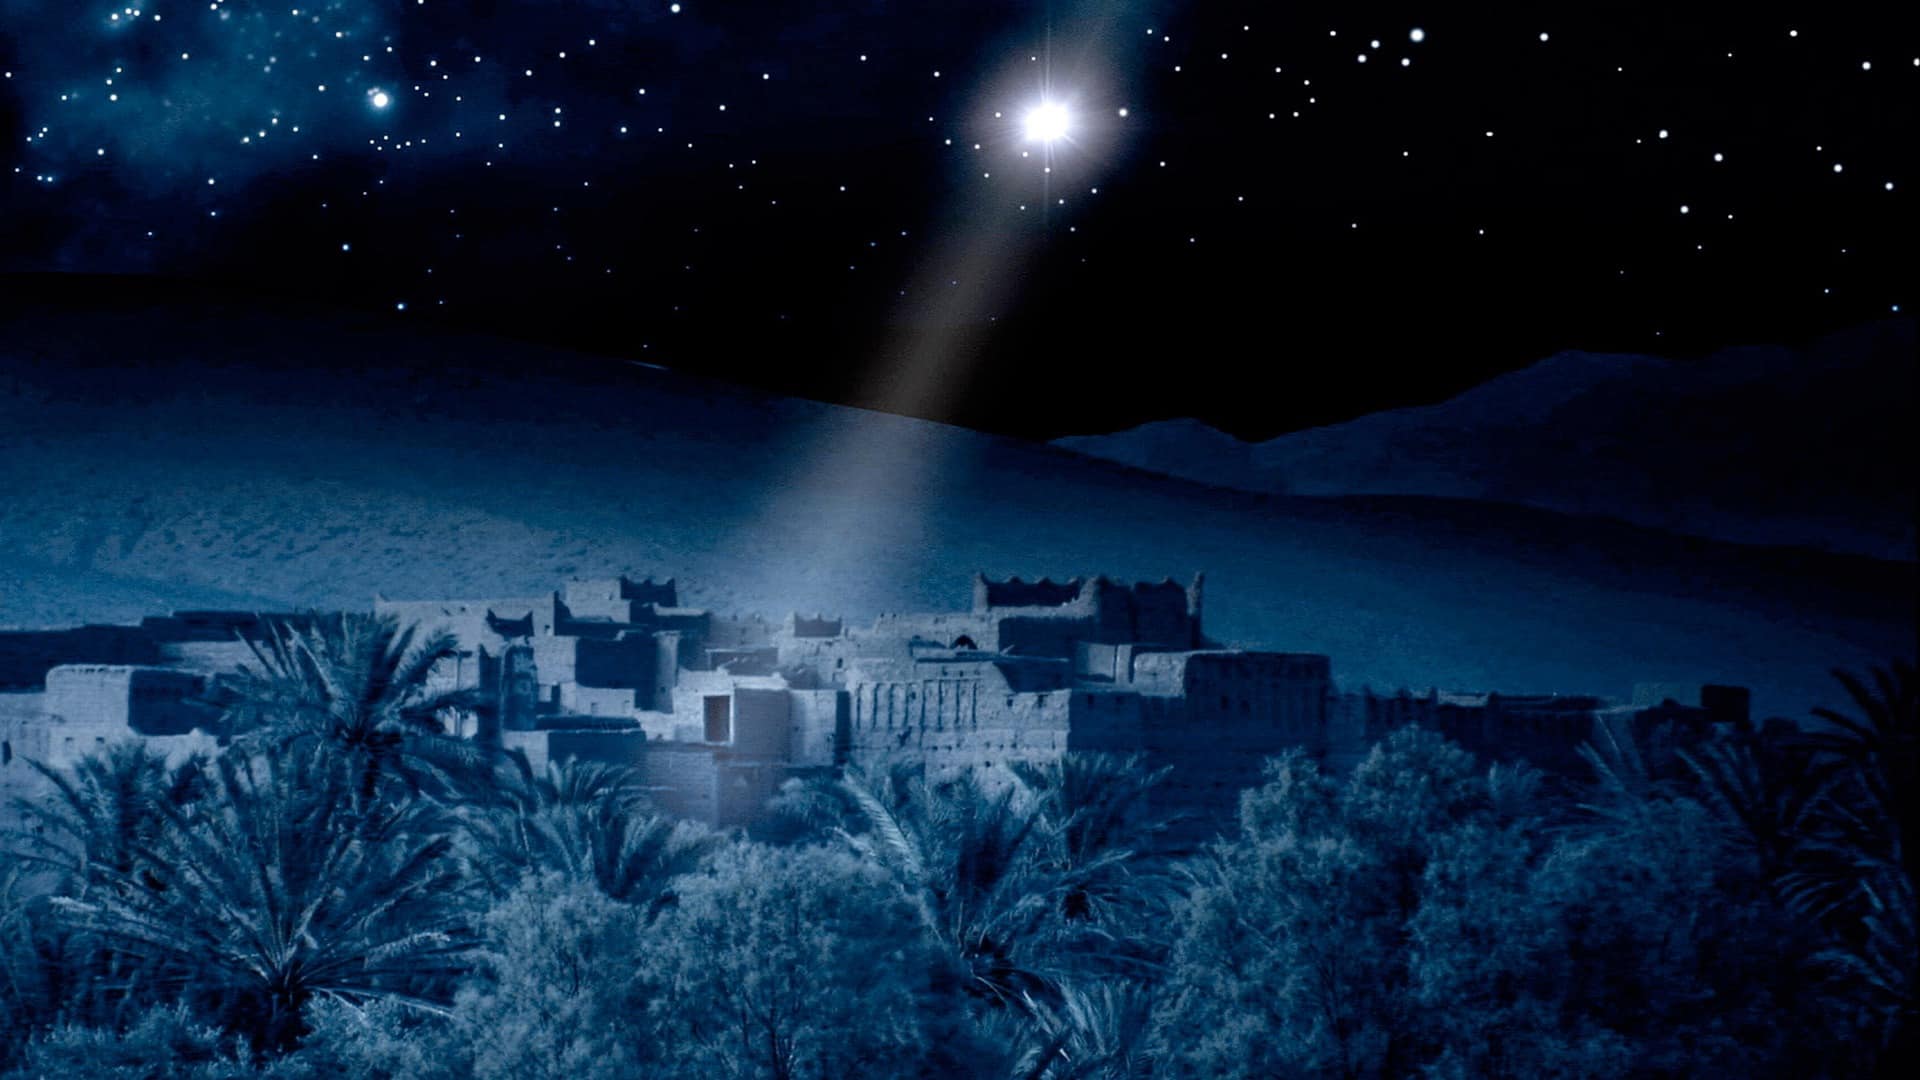 Сегодня, 21 декабря, под католическое Рождество, впервые за 400 лет в небе загорится Вифлеемская звезда - фото 1